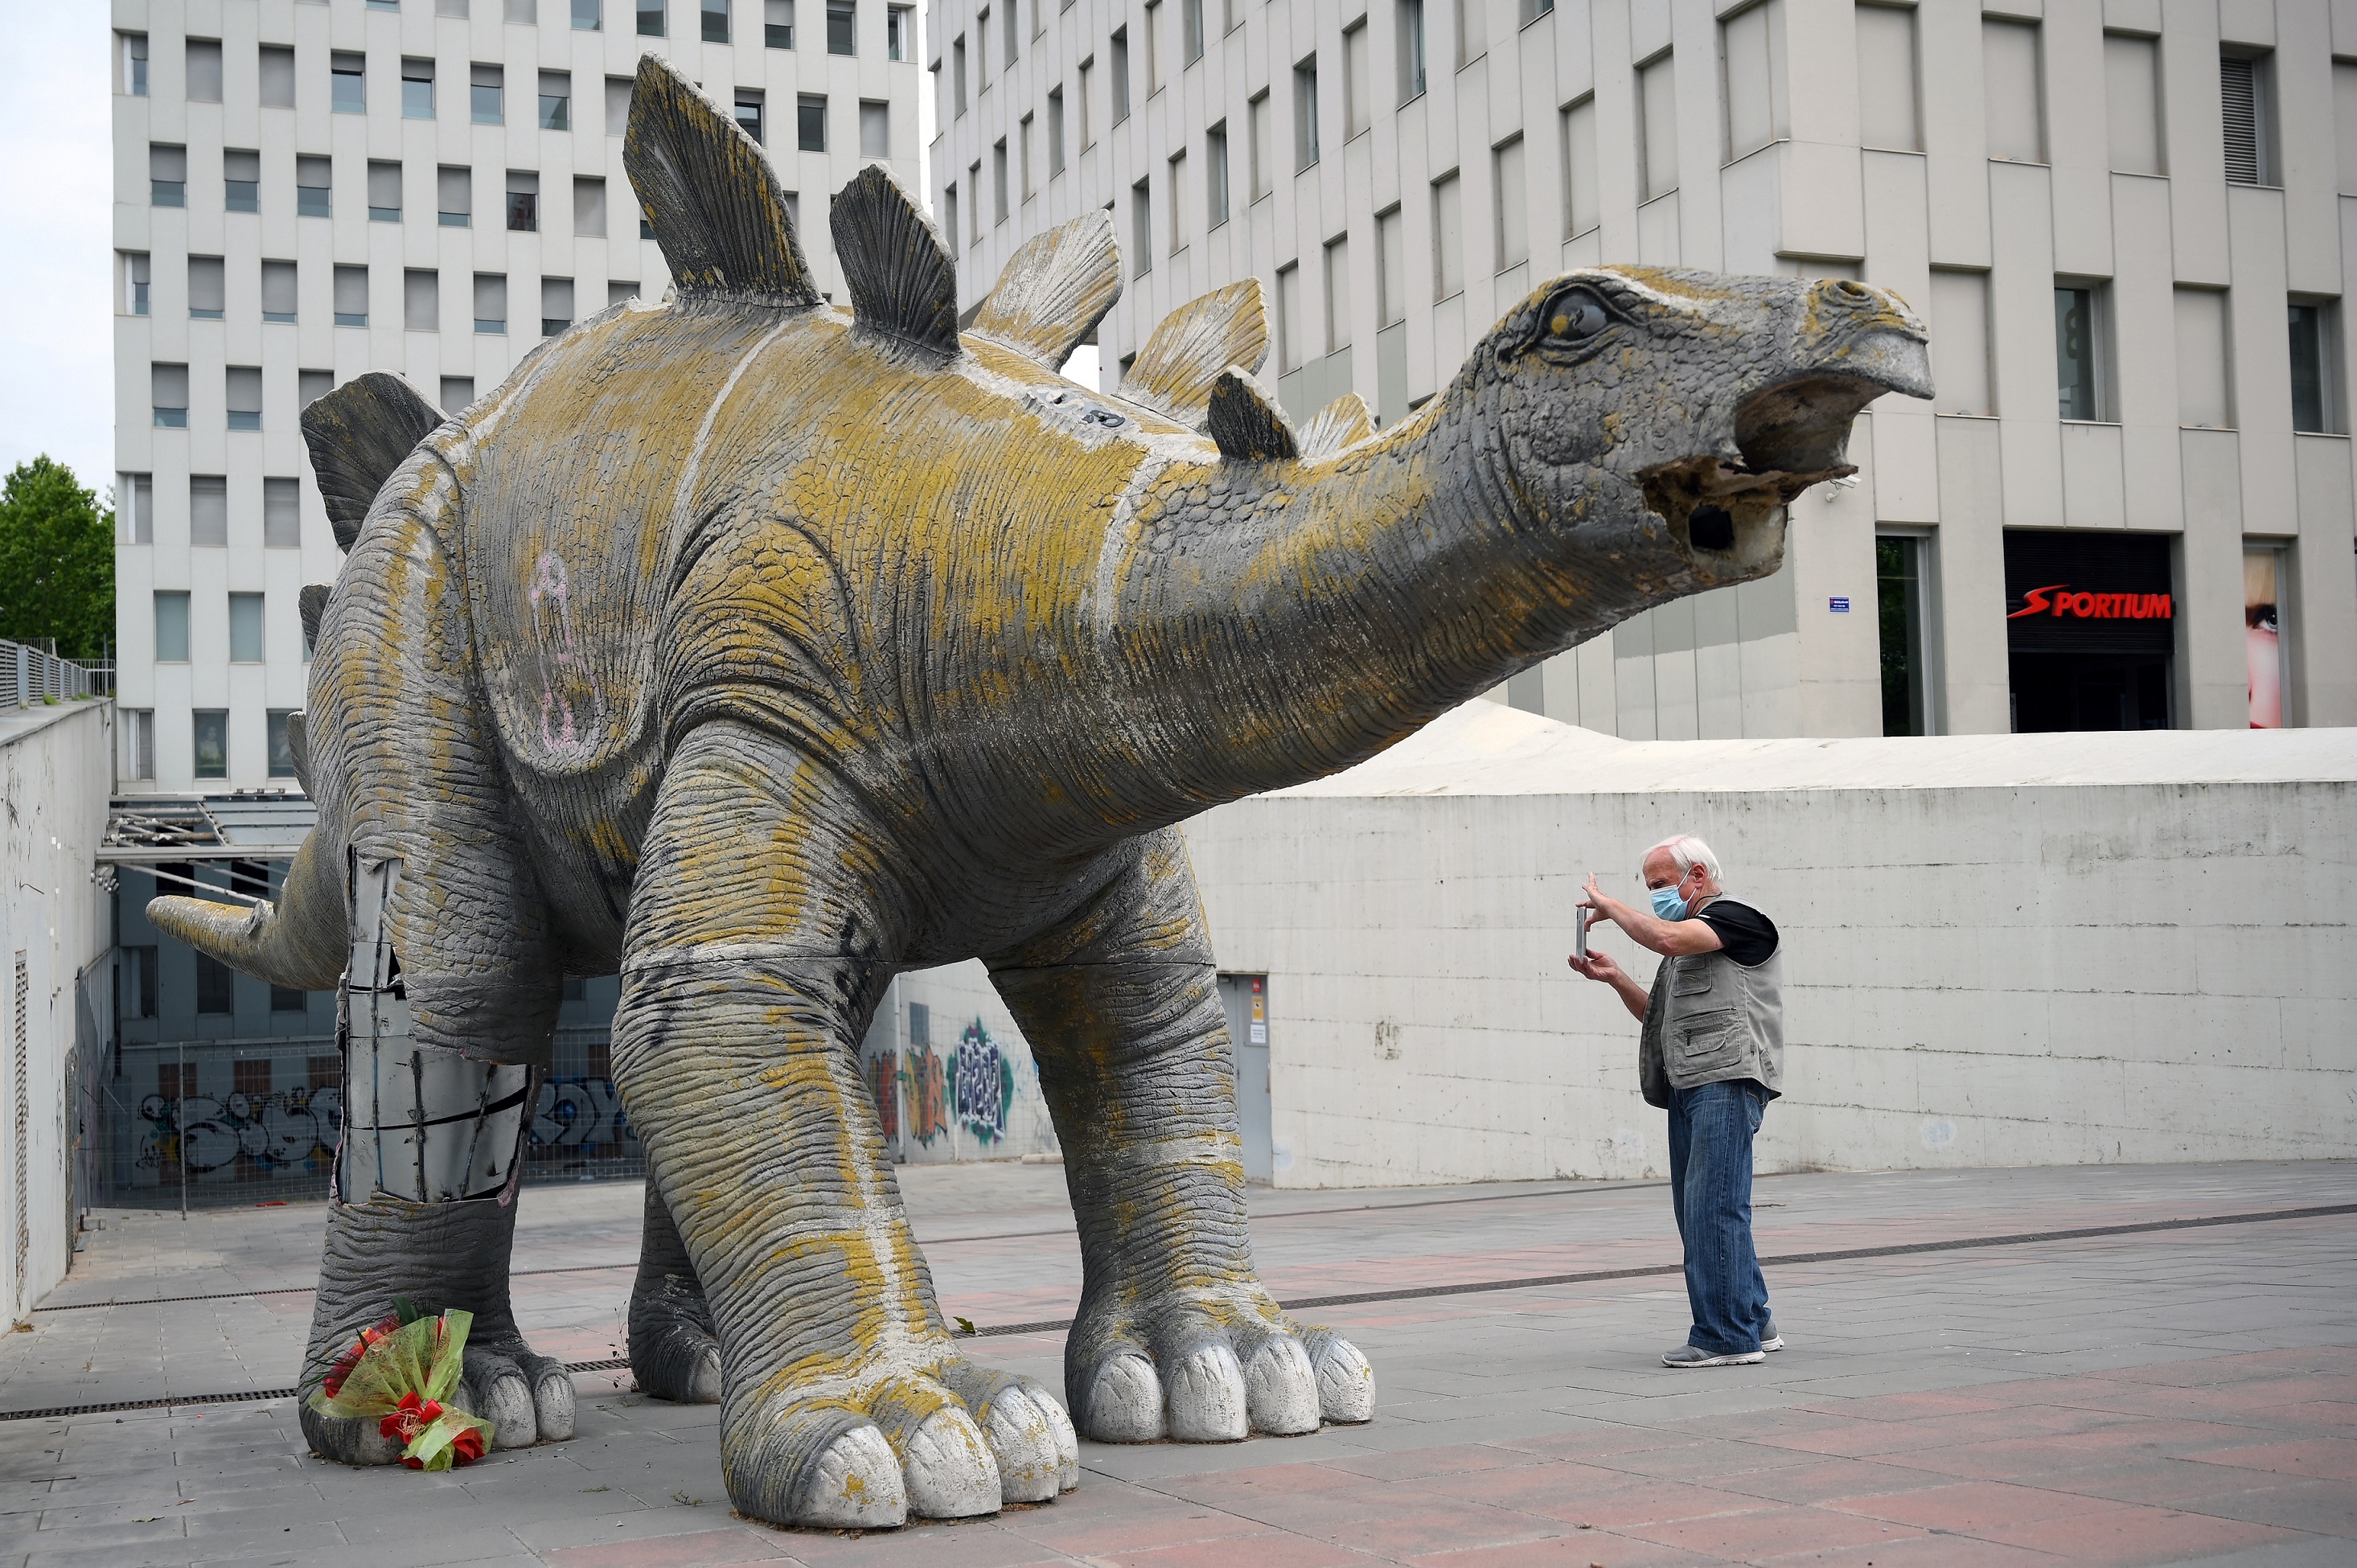 Muere un hombre dentro de una estatua de un dinosaurio en Barcelona |  Público